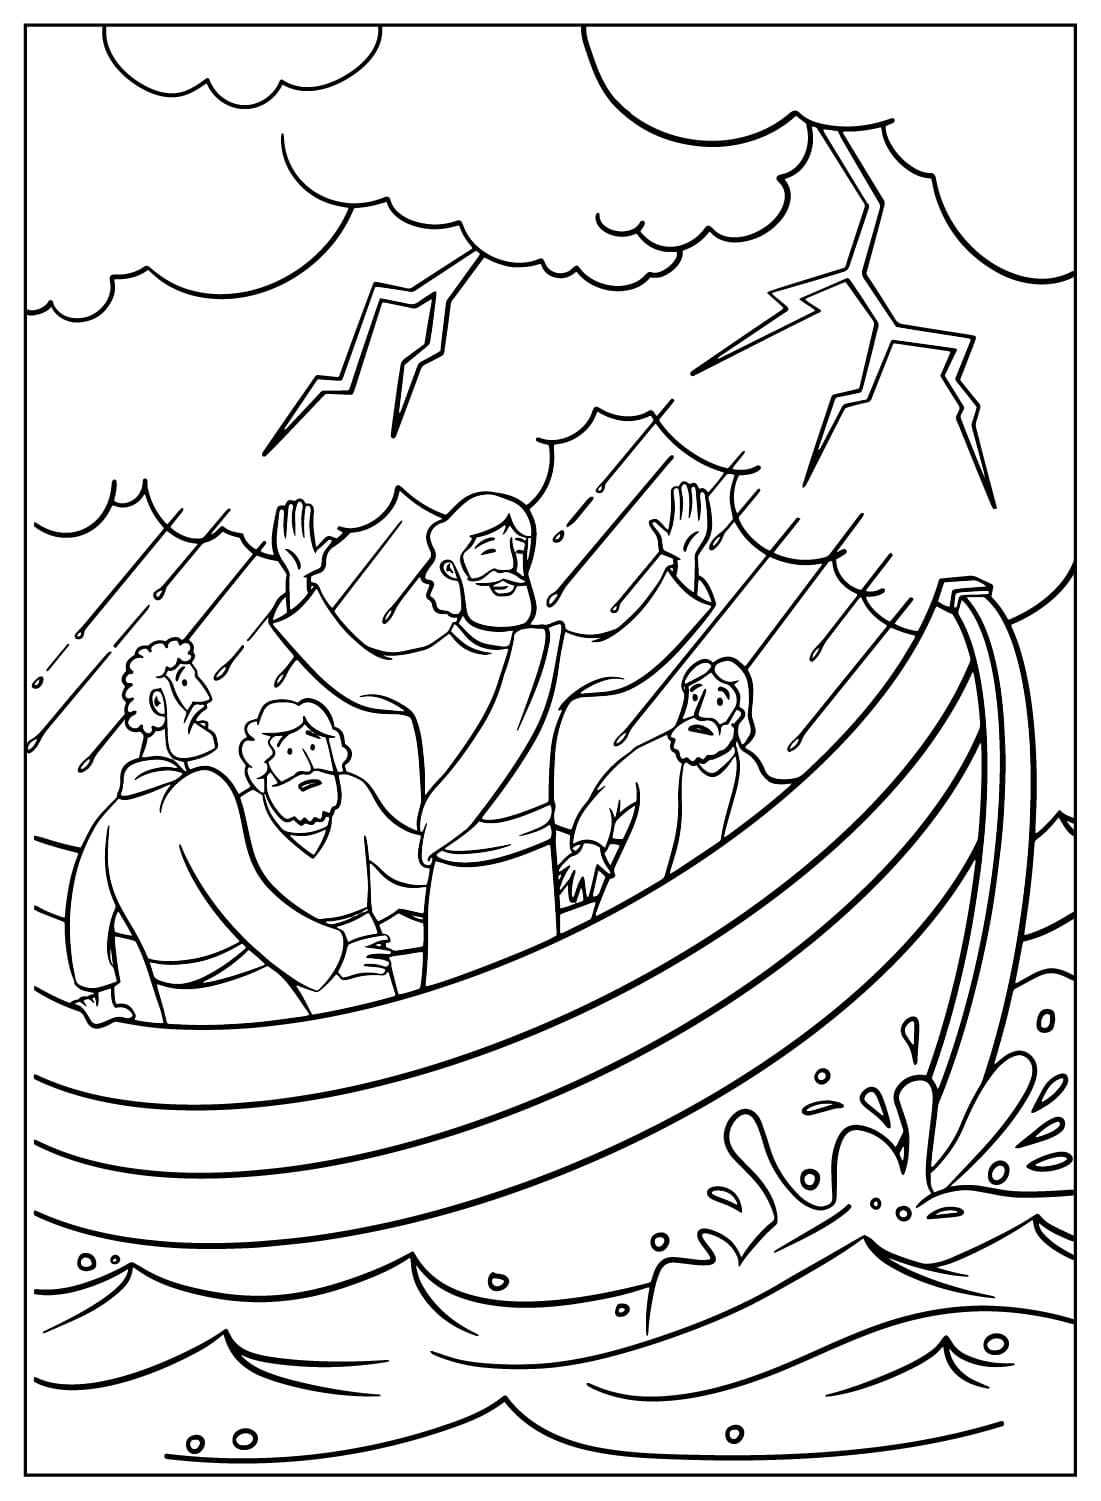 يسوع يهدئ العاصفة صفحة التلوين من يسوع